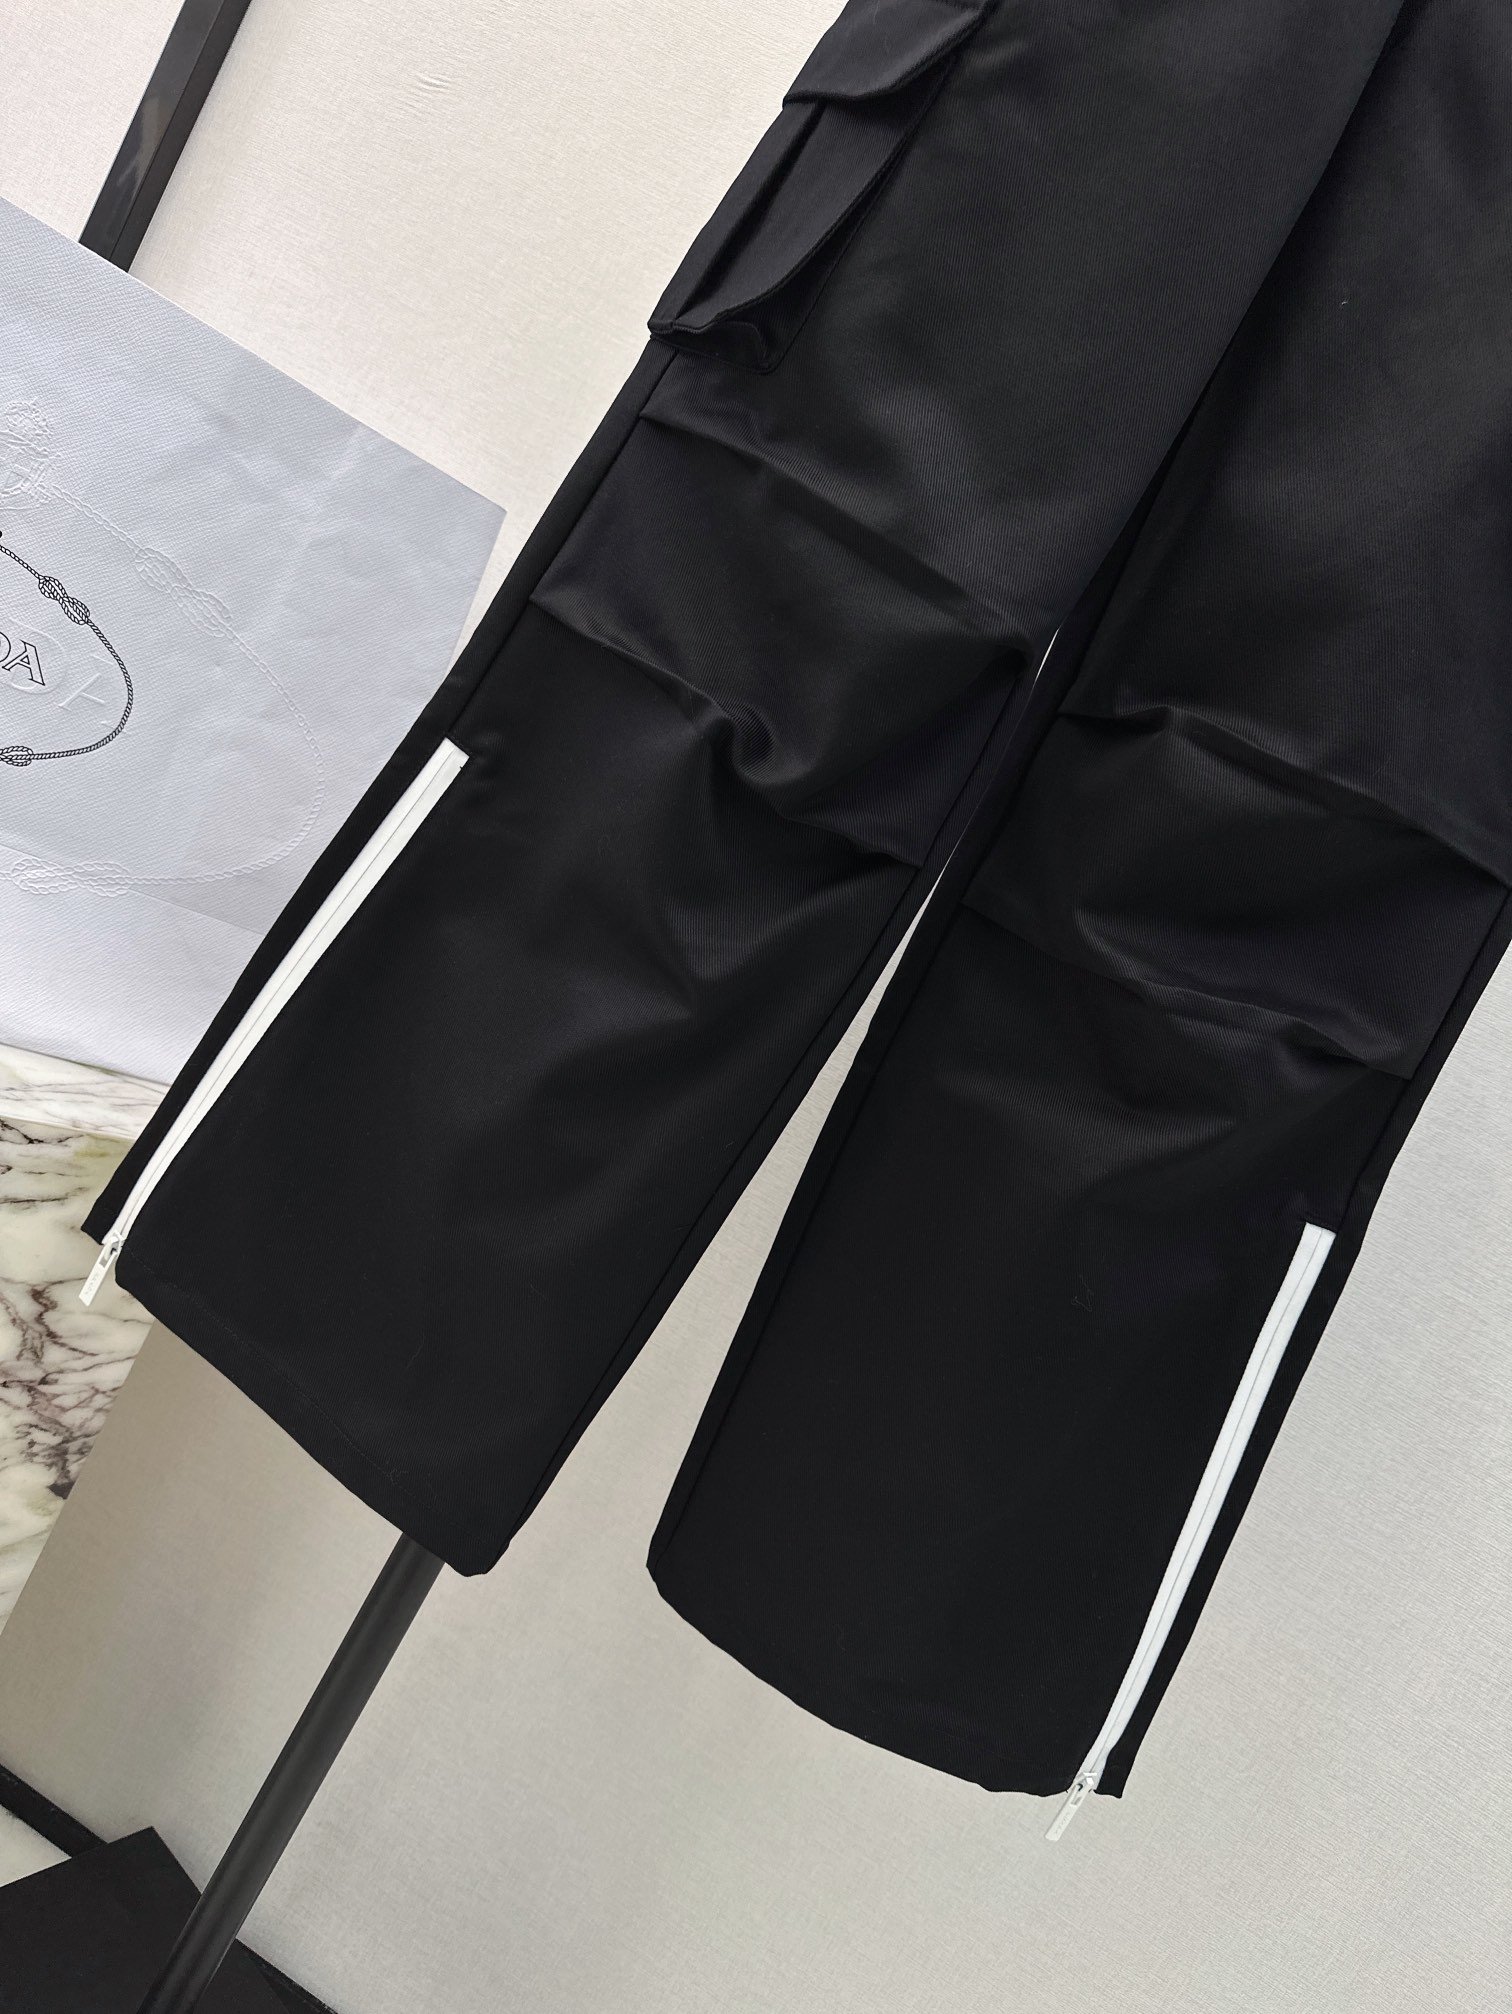 独家首发PD24Ss早春最新款口袋经典三角标设计工装风直筒裤双侧口袋设计一整个时髦的工装裤子非常百搭好穿